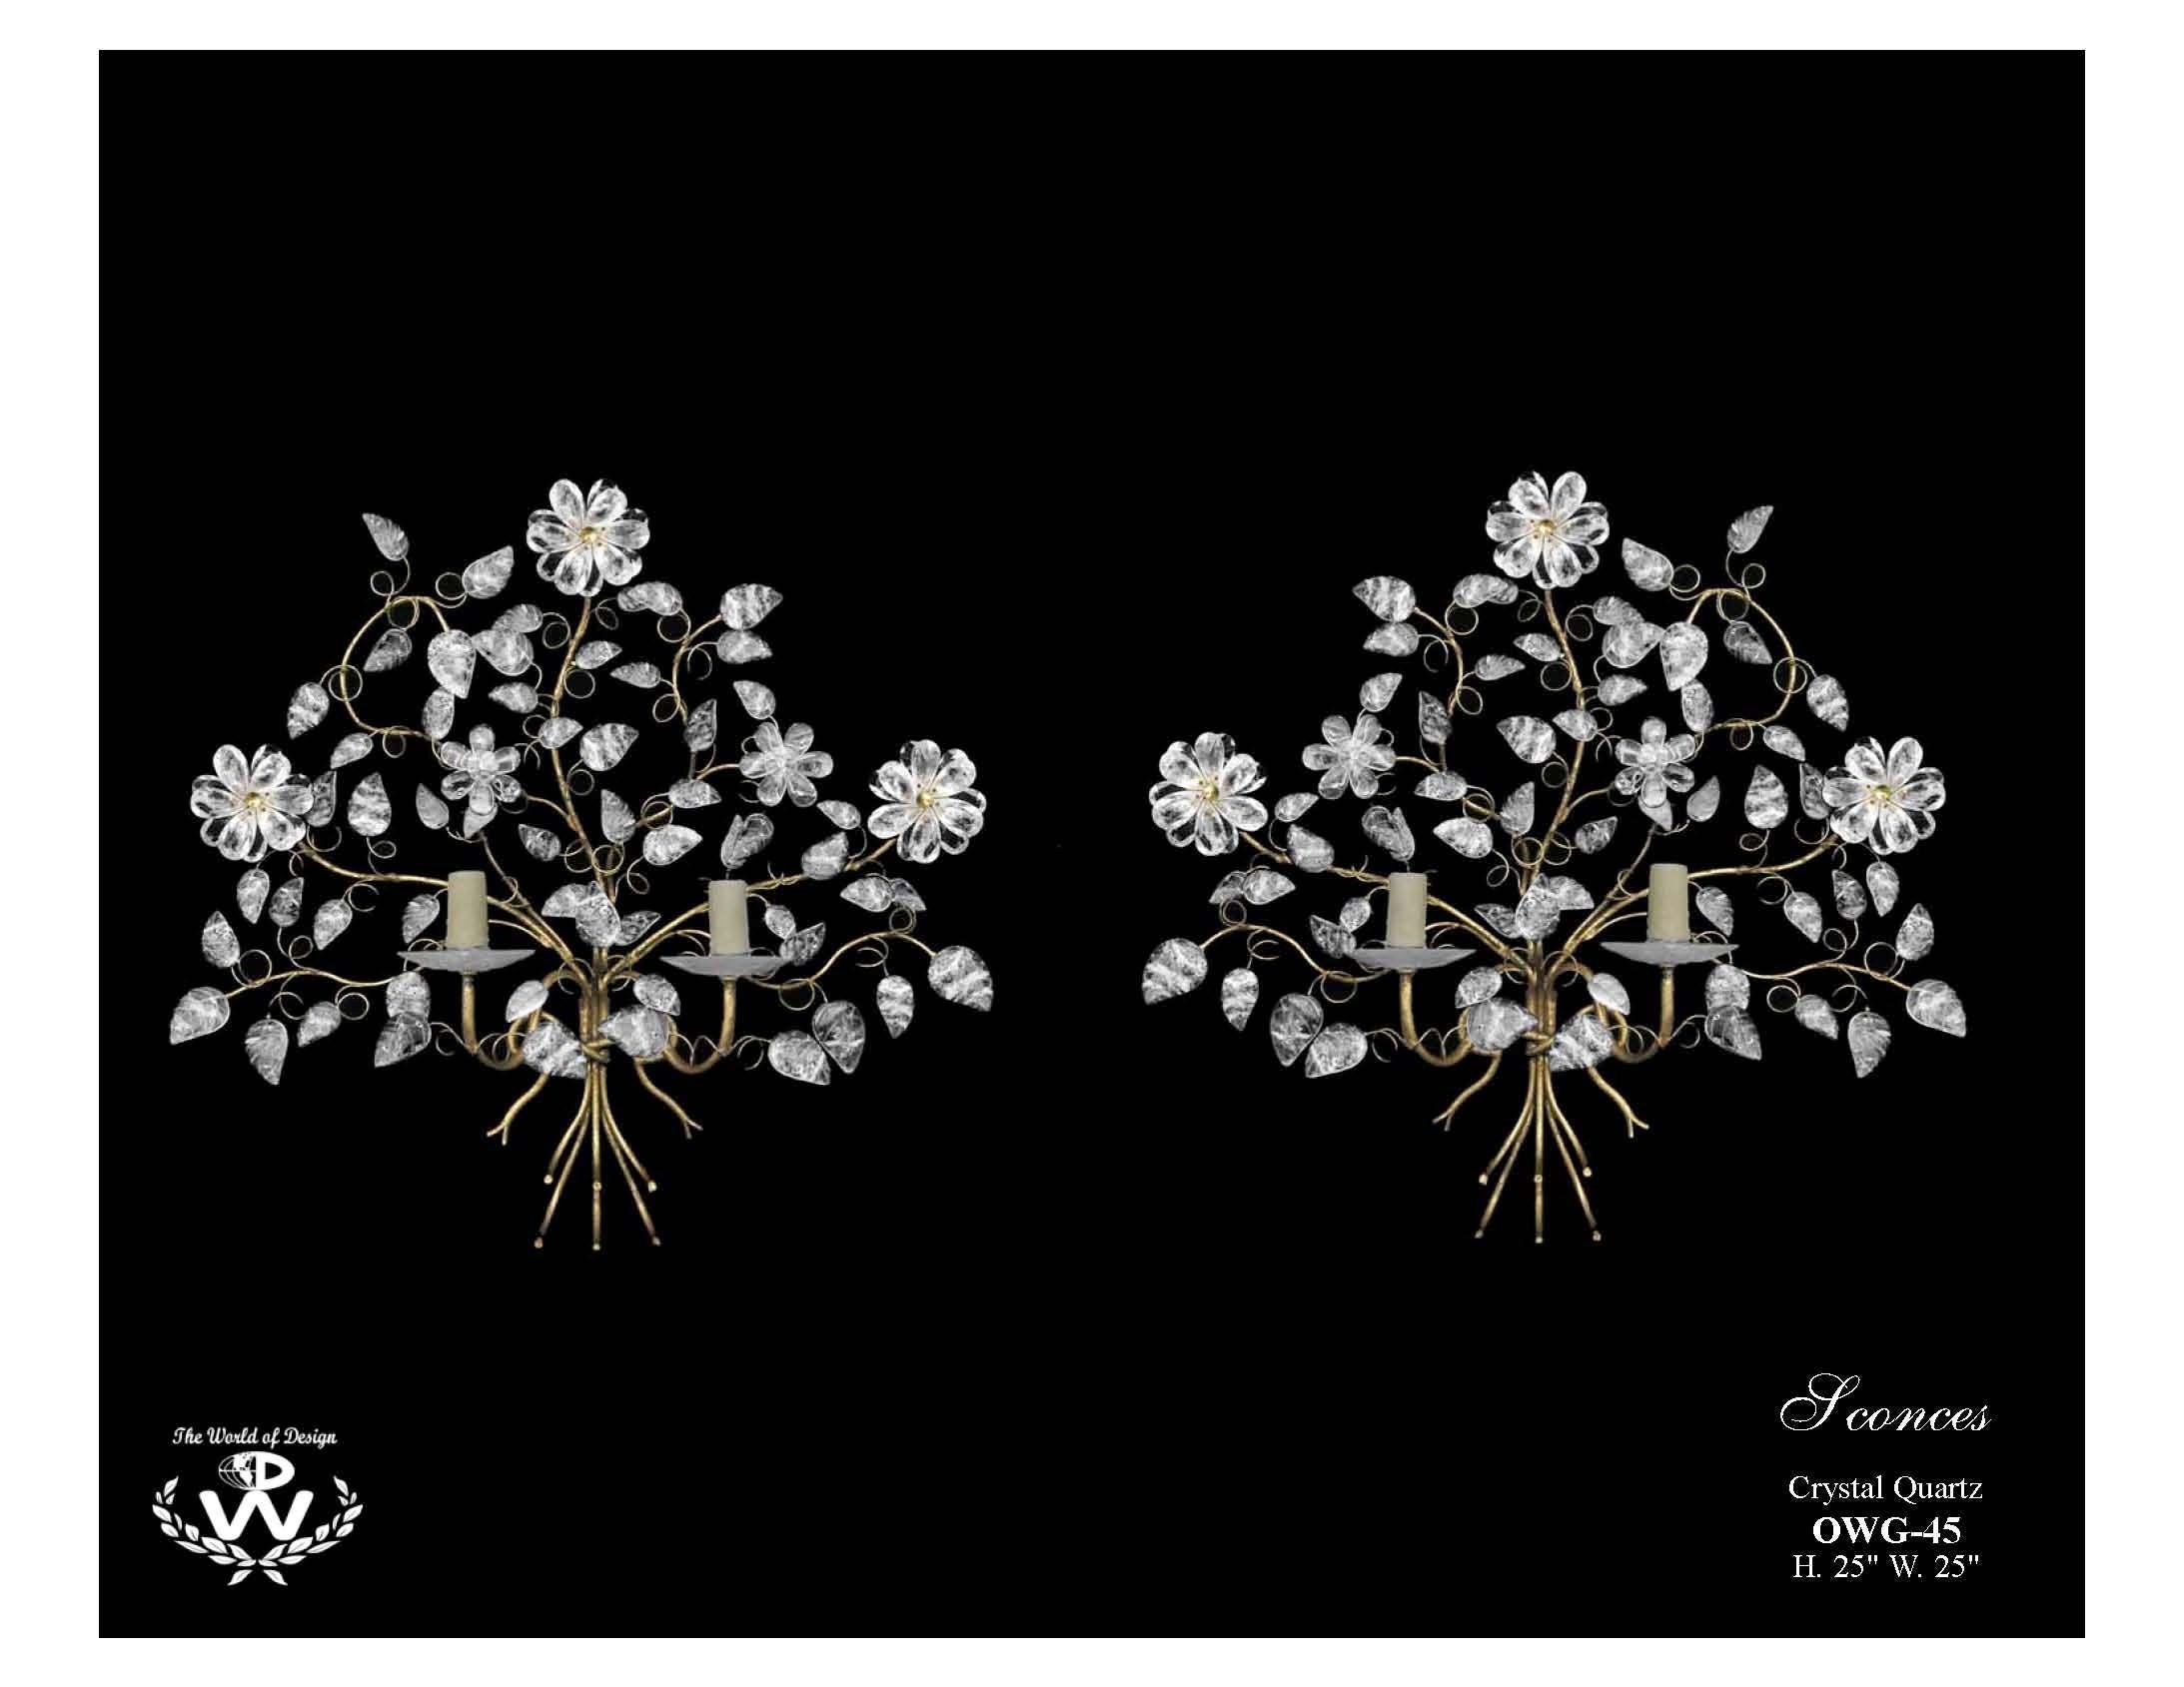 Wunderschönes gegensätzliches Paar handgeschnitzter und handpolierter floraler Bergkristall-Wandleuchter mit zwei Lichtern.
21. Jahrhundert.
Jede exquisite Leuchte hat in der Mitte eine runde Wandhalterung, die zwei geschwungene Arme aufweist, die